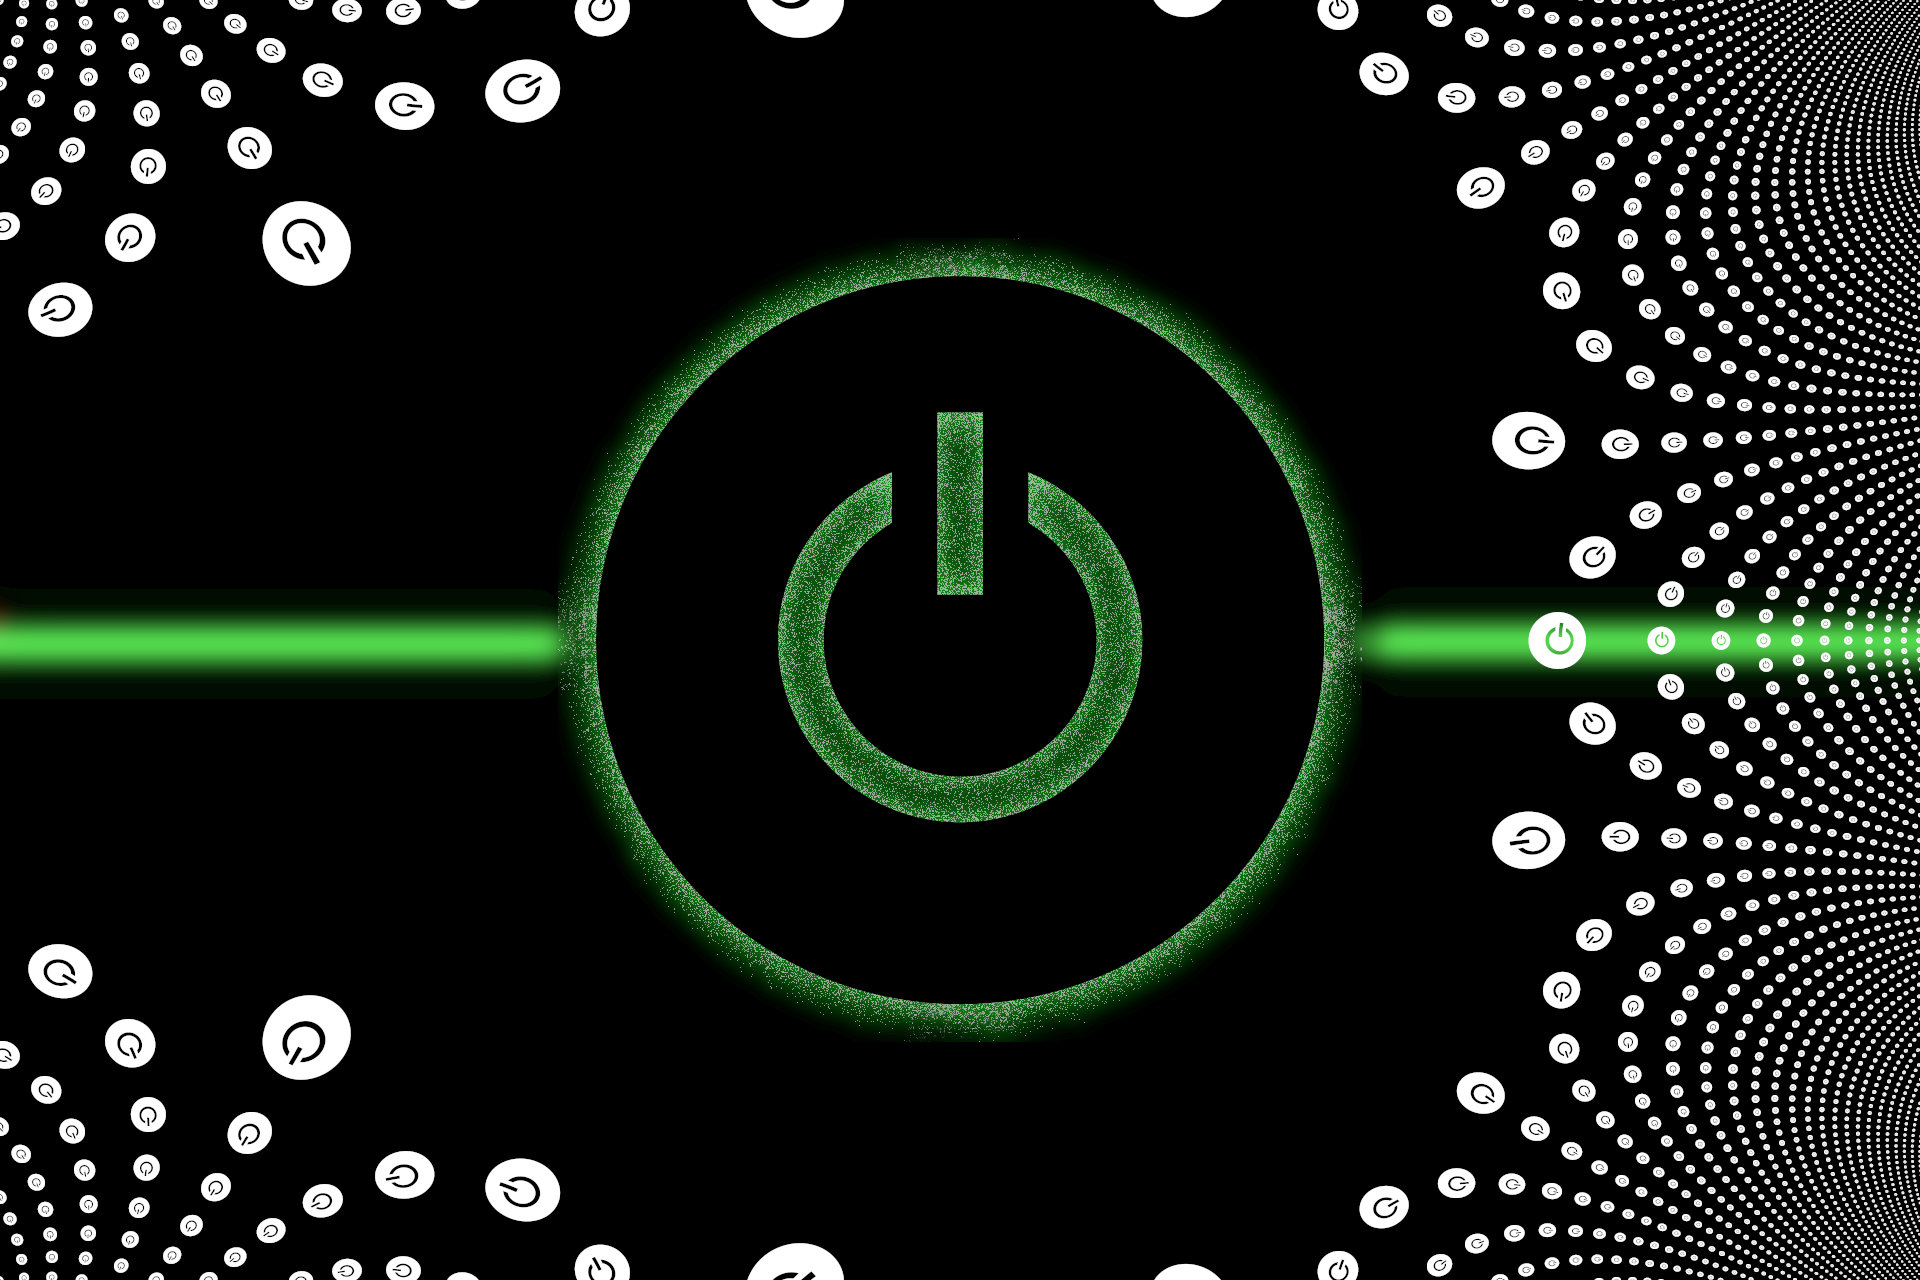 Uma representação gráfica de um botão liga/desliga em verde e branco aparece sobre uma linha verde brilhante que corre horizontalmente.